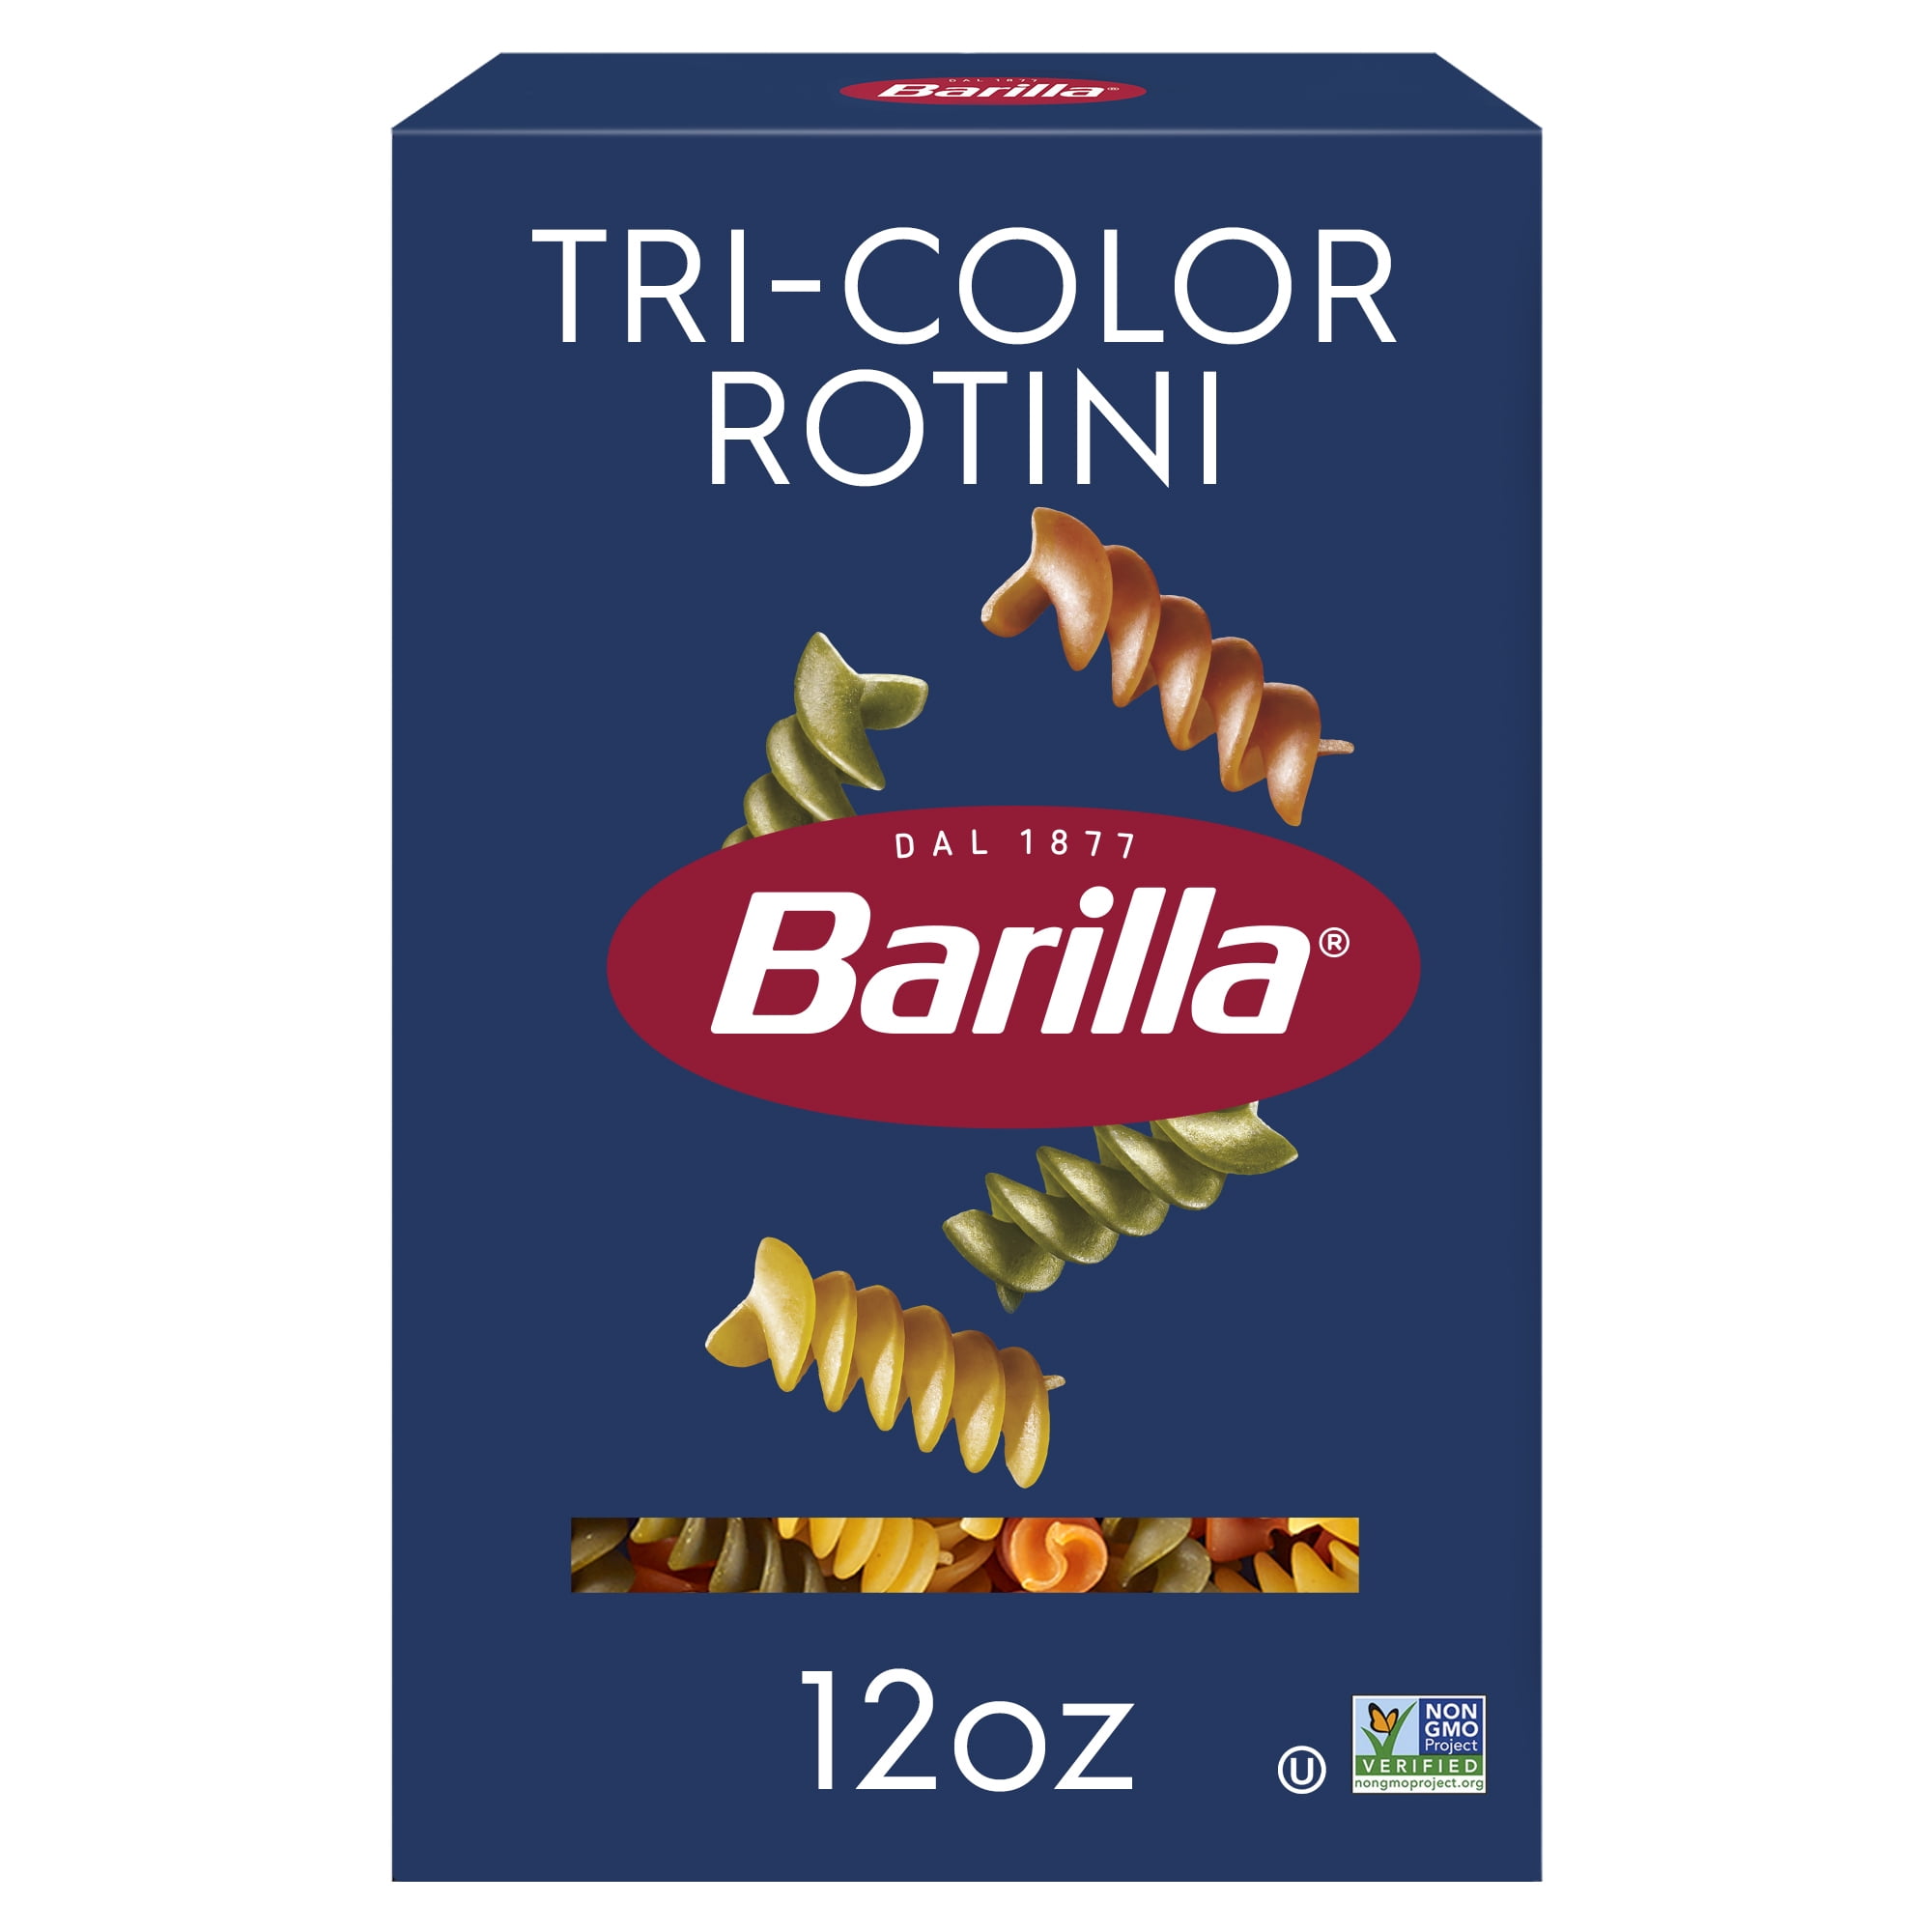 Barilla Tri-Color Rotini Pasta 12 oz Non-GMO, Kosher Certified